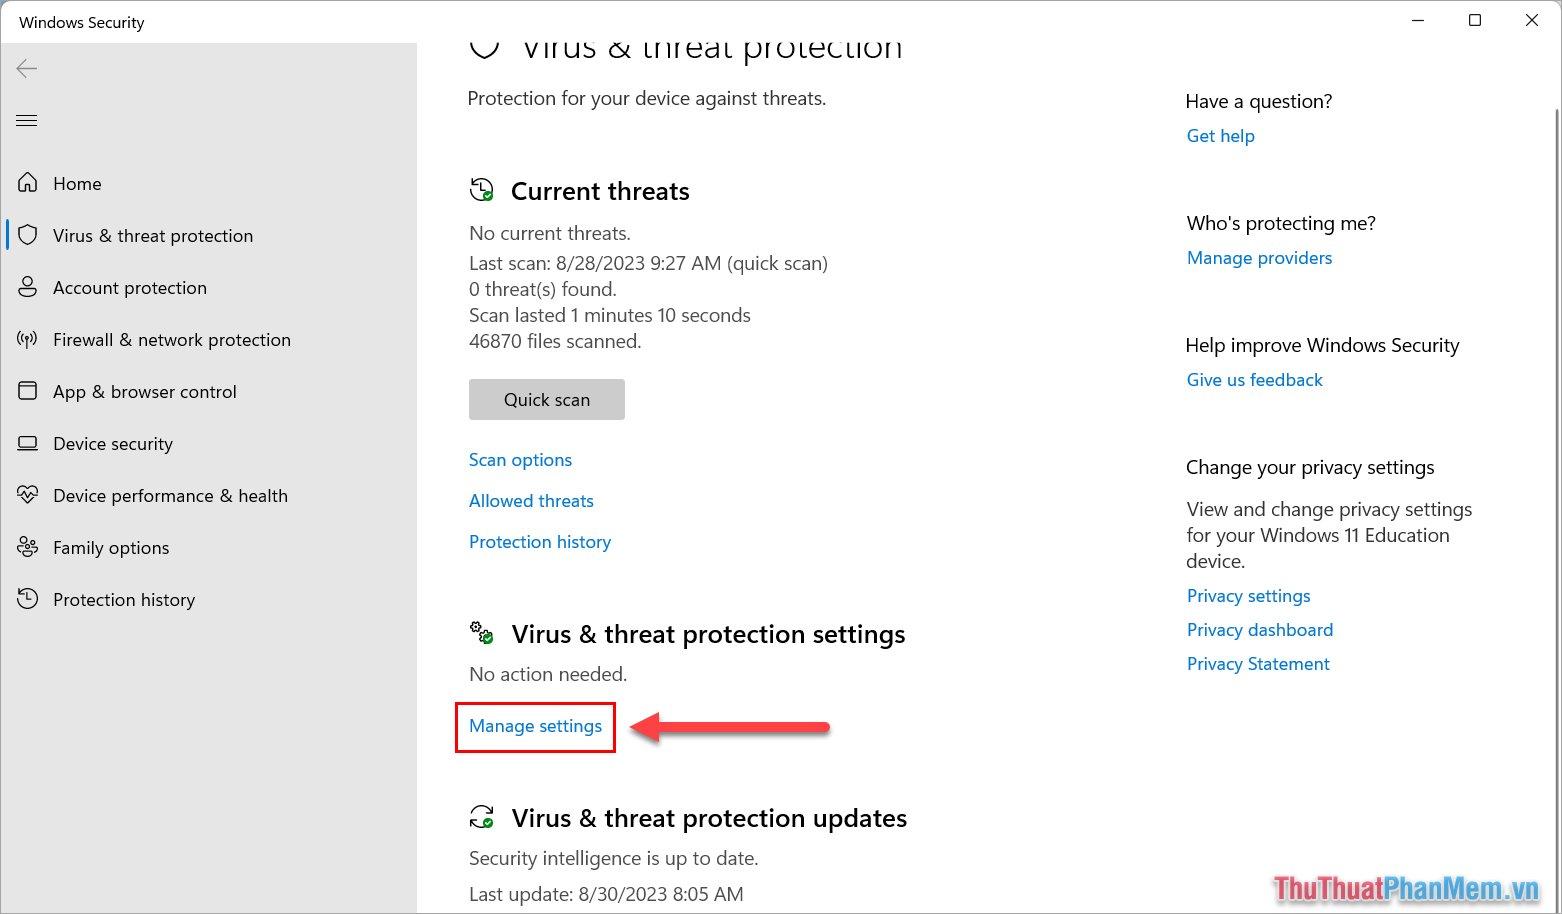 Tìm đến mục Virus & threat protection settings và chọn Manage Settings